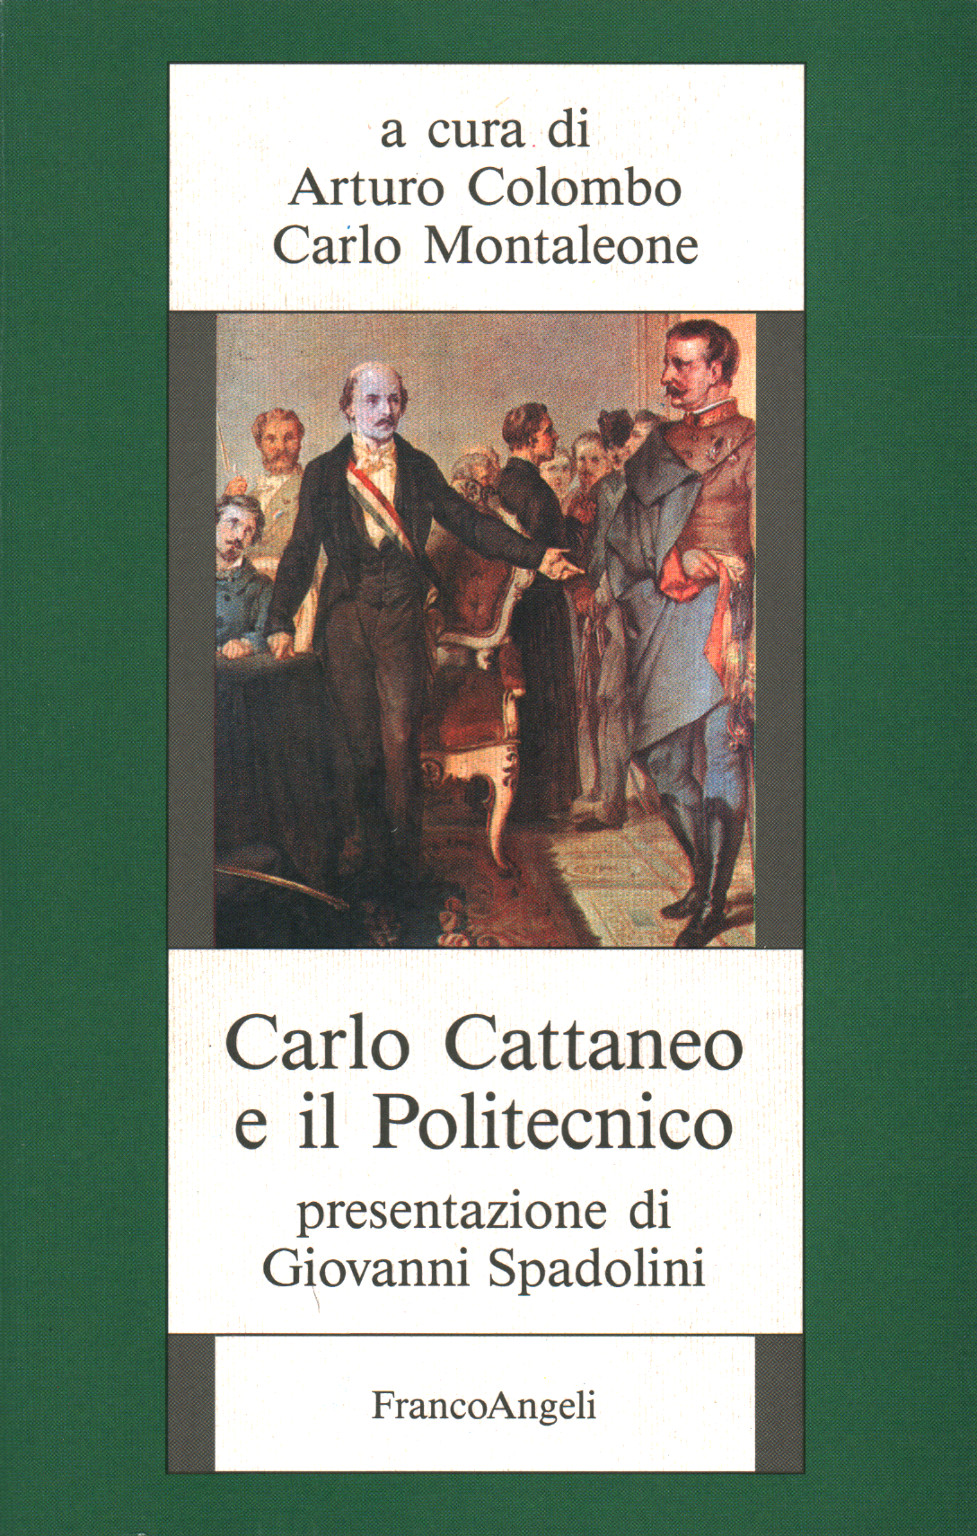 Carlo Cattaneo and the Polytechnic, Arturo Colombo Carlo Montaleone